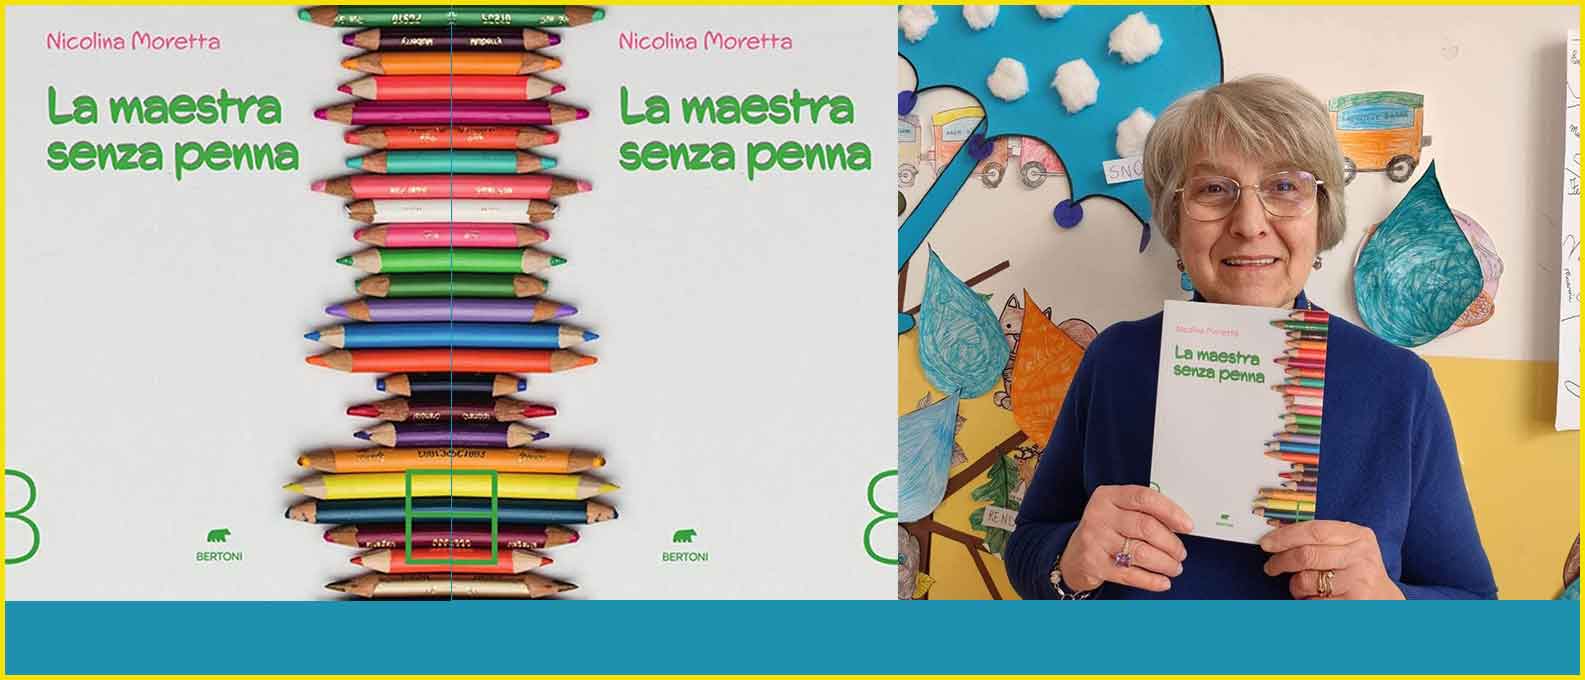 Nicoletta Moretta “La maestra senza penna”.